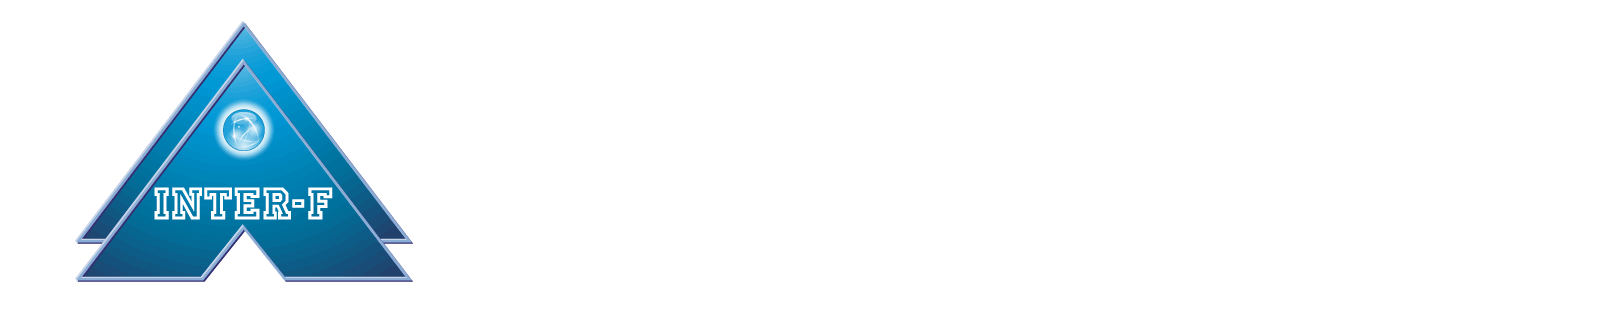 INTER-F ZRT